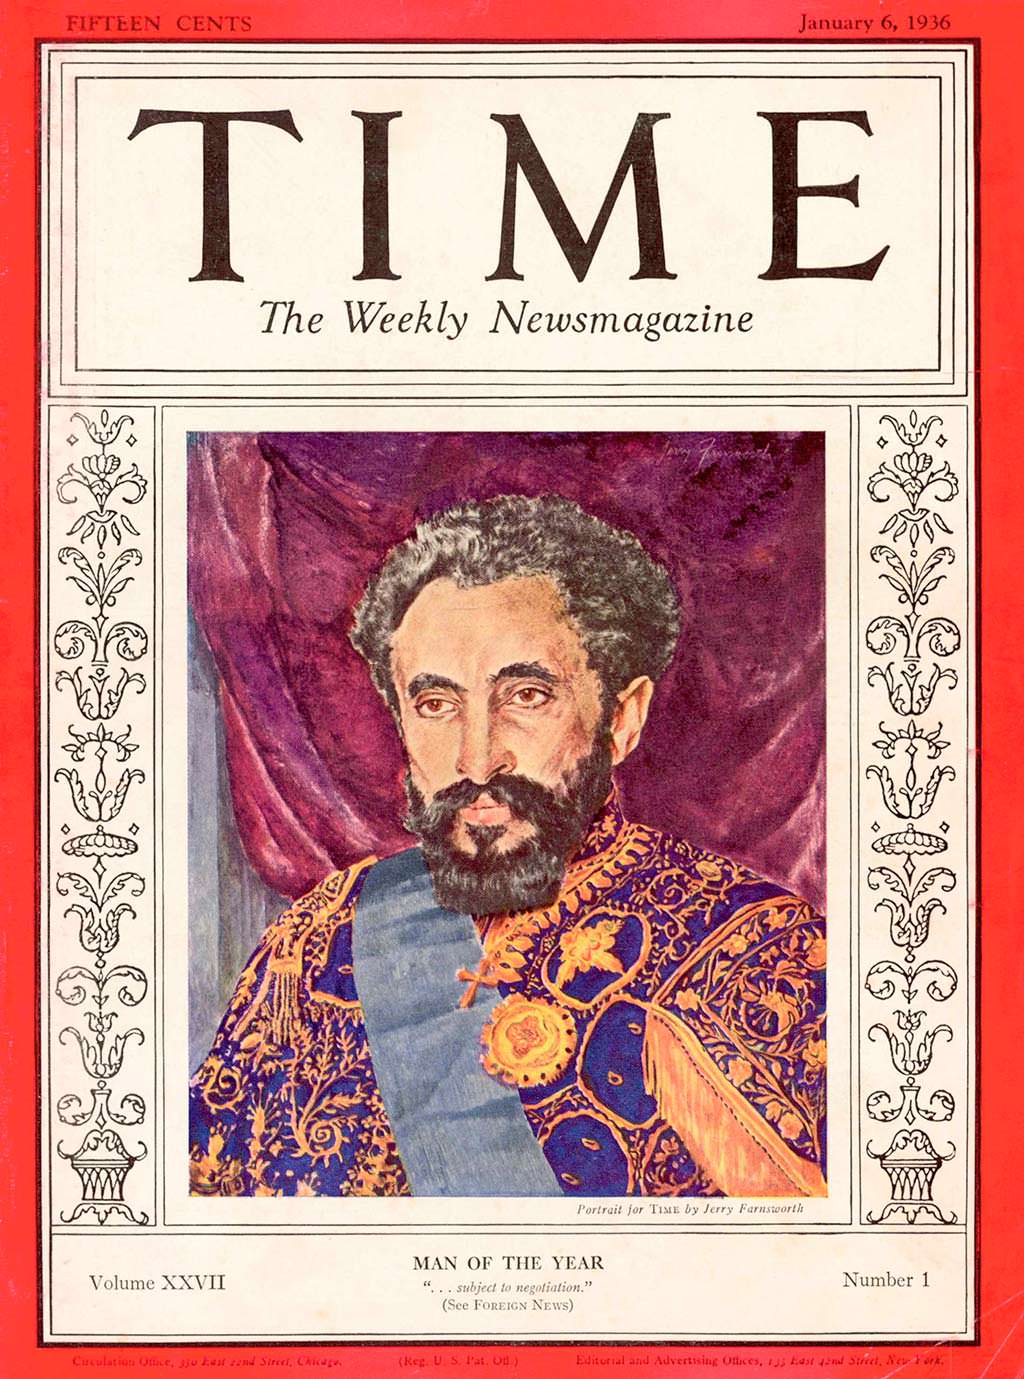 1935 год. Император Эфиопии Хайле Селассие I на обложке Time